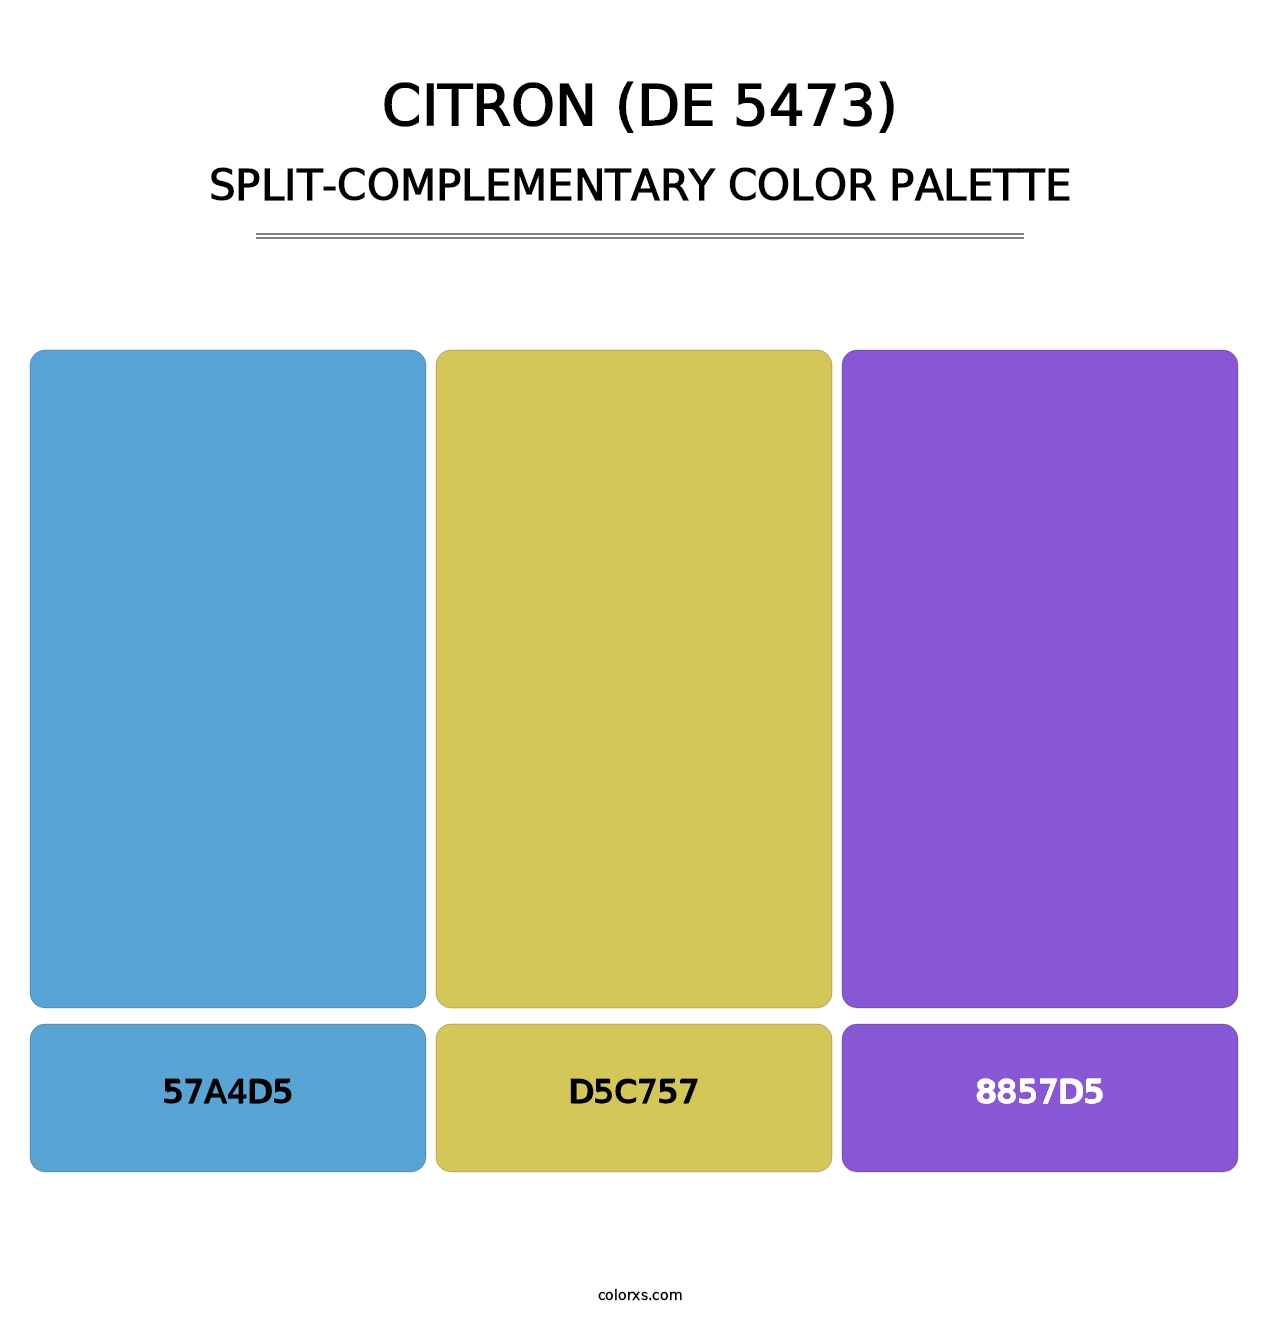 Citron (DE 5473) - Split-Complementary Color Palette